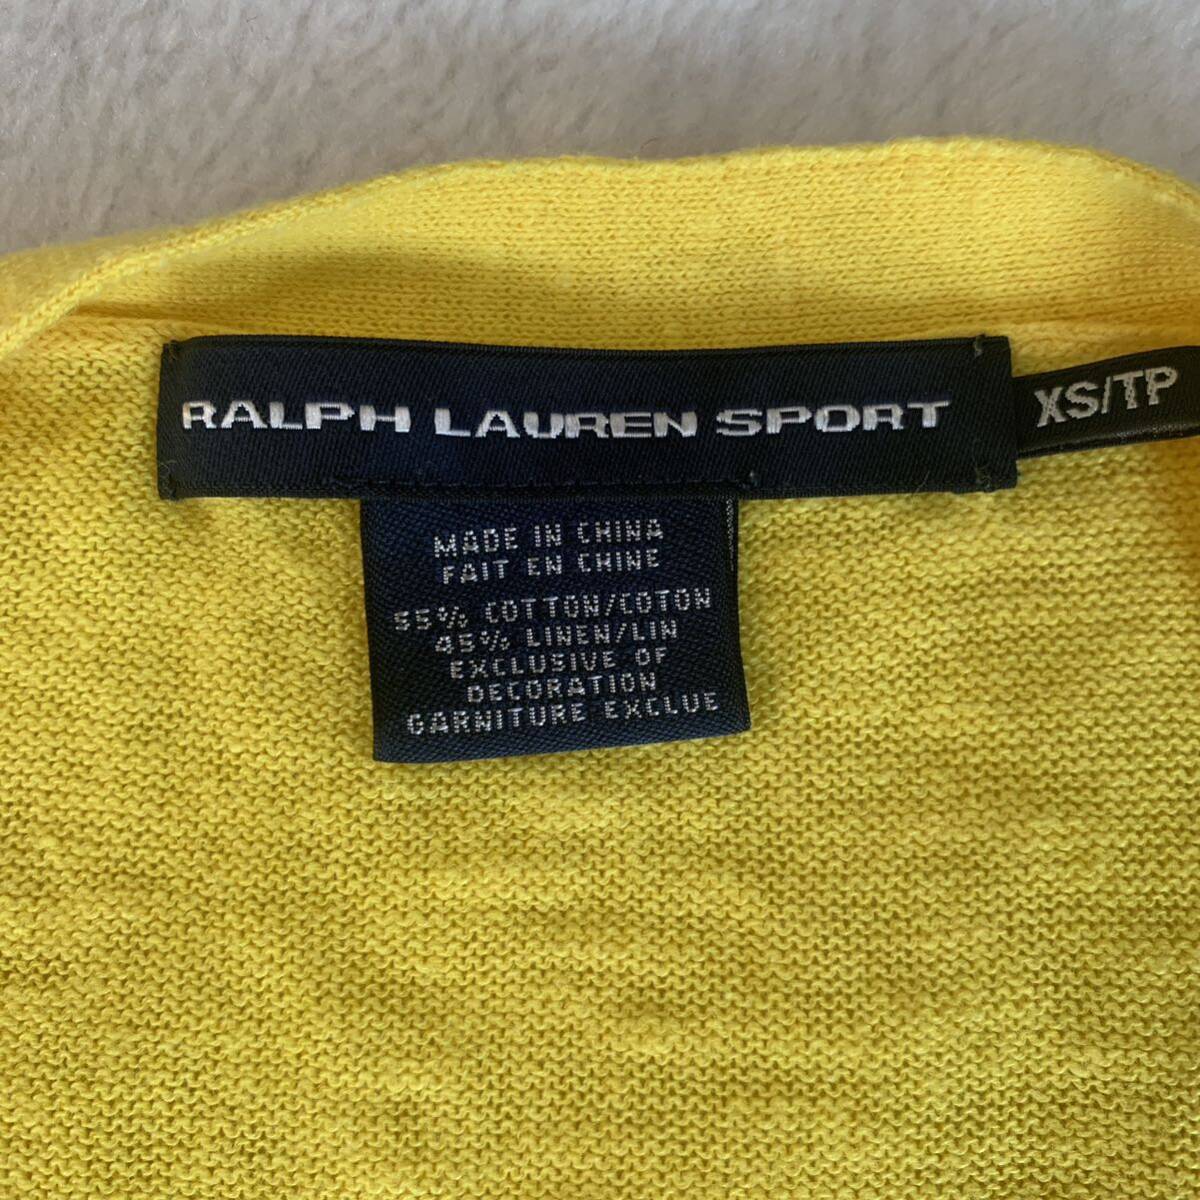 * Ralph Lauren спорт * женский кардиган желтый XS